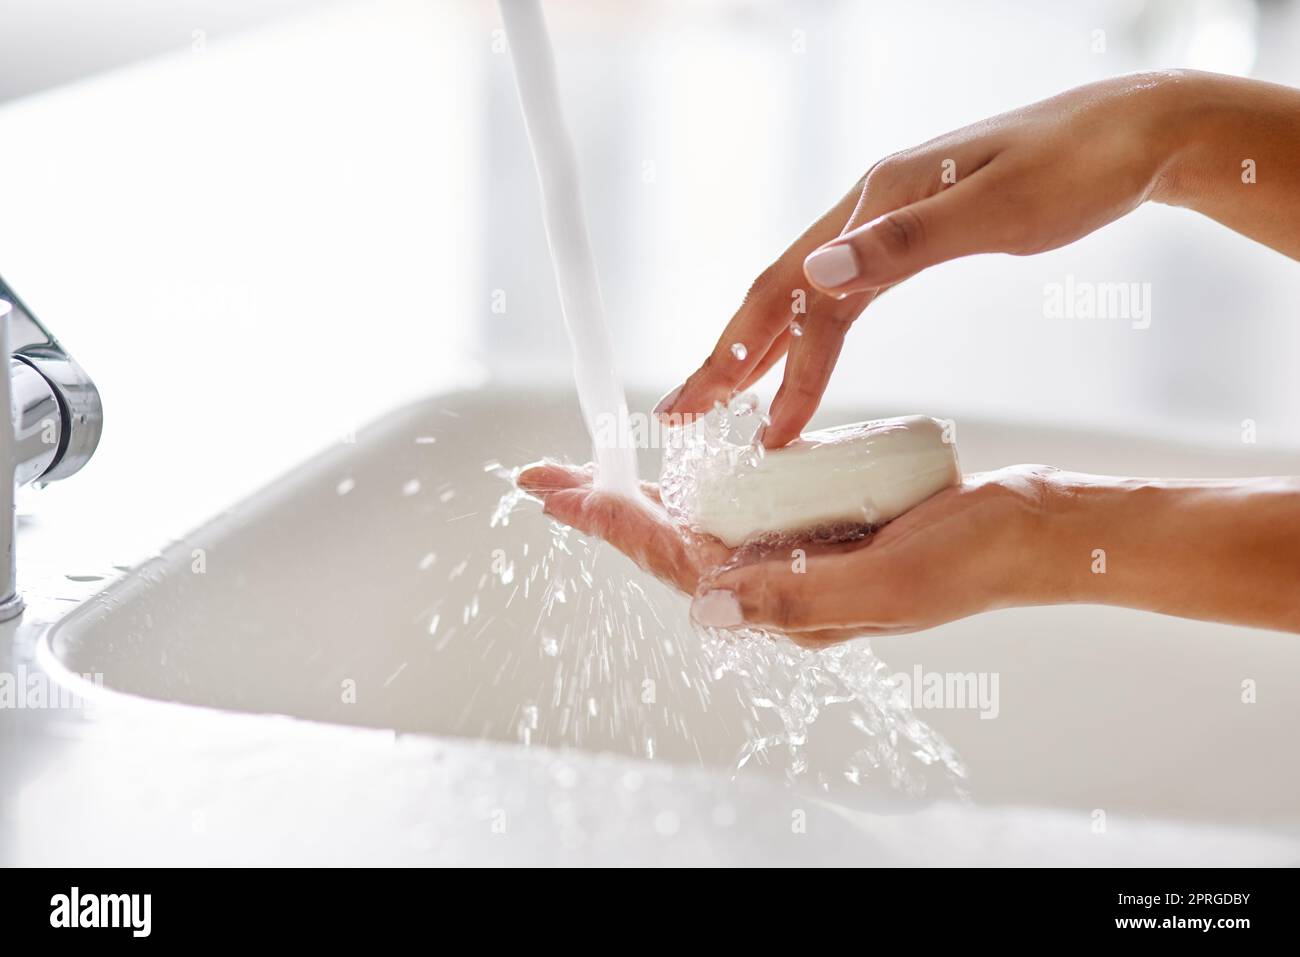 Garantire abitudini igieniche sane. Mani lavate al rubinetto. Foto Stock